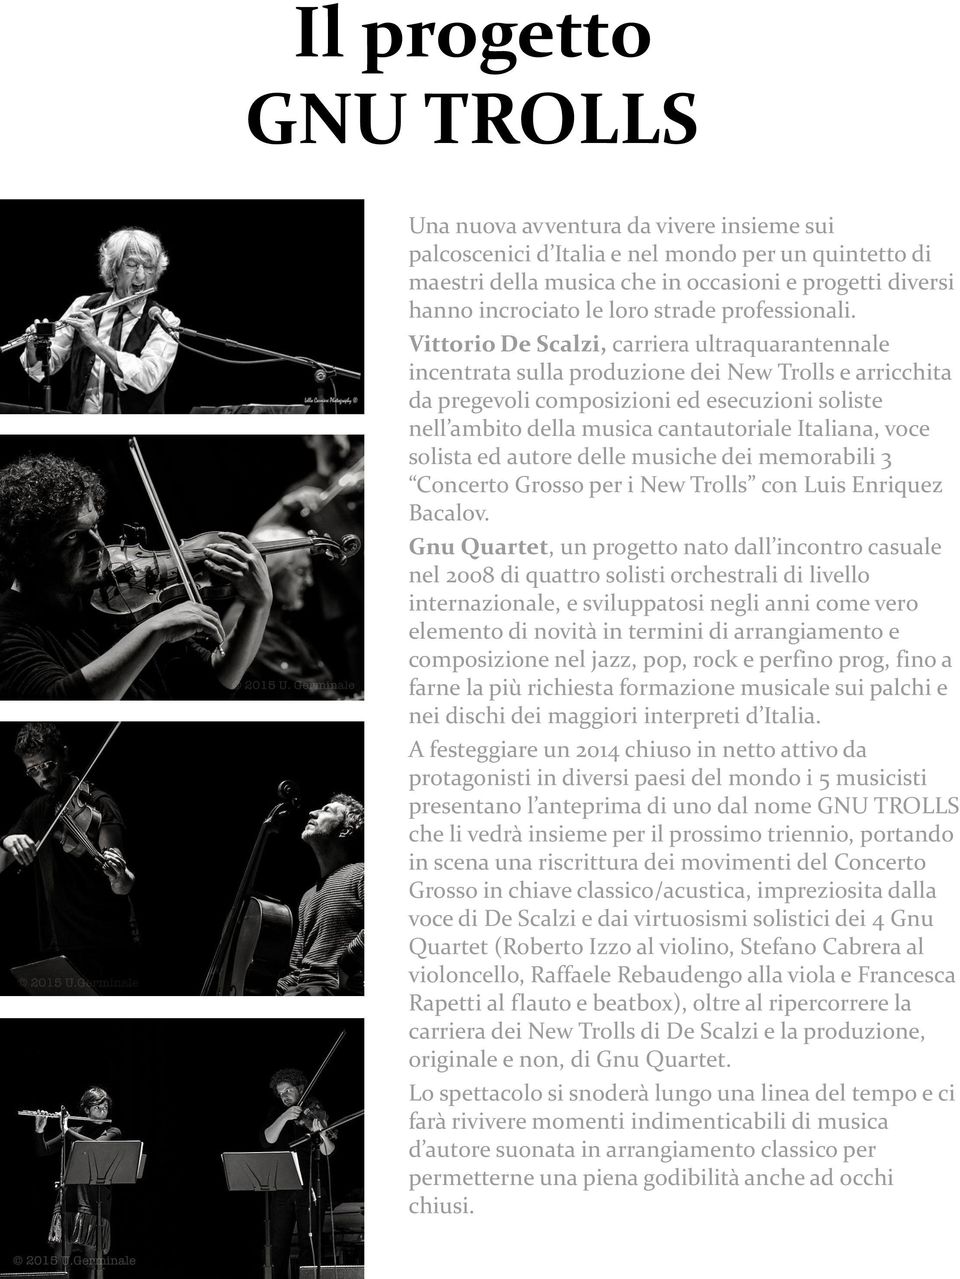 Vittorio De Scalzi, carriera ultraquarantennale incentrata sulla produzione dei New Trolls e arricchita da pregevoli composizioni ed esecuzioni soliste nell ambito della musica cantautoriale